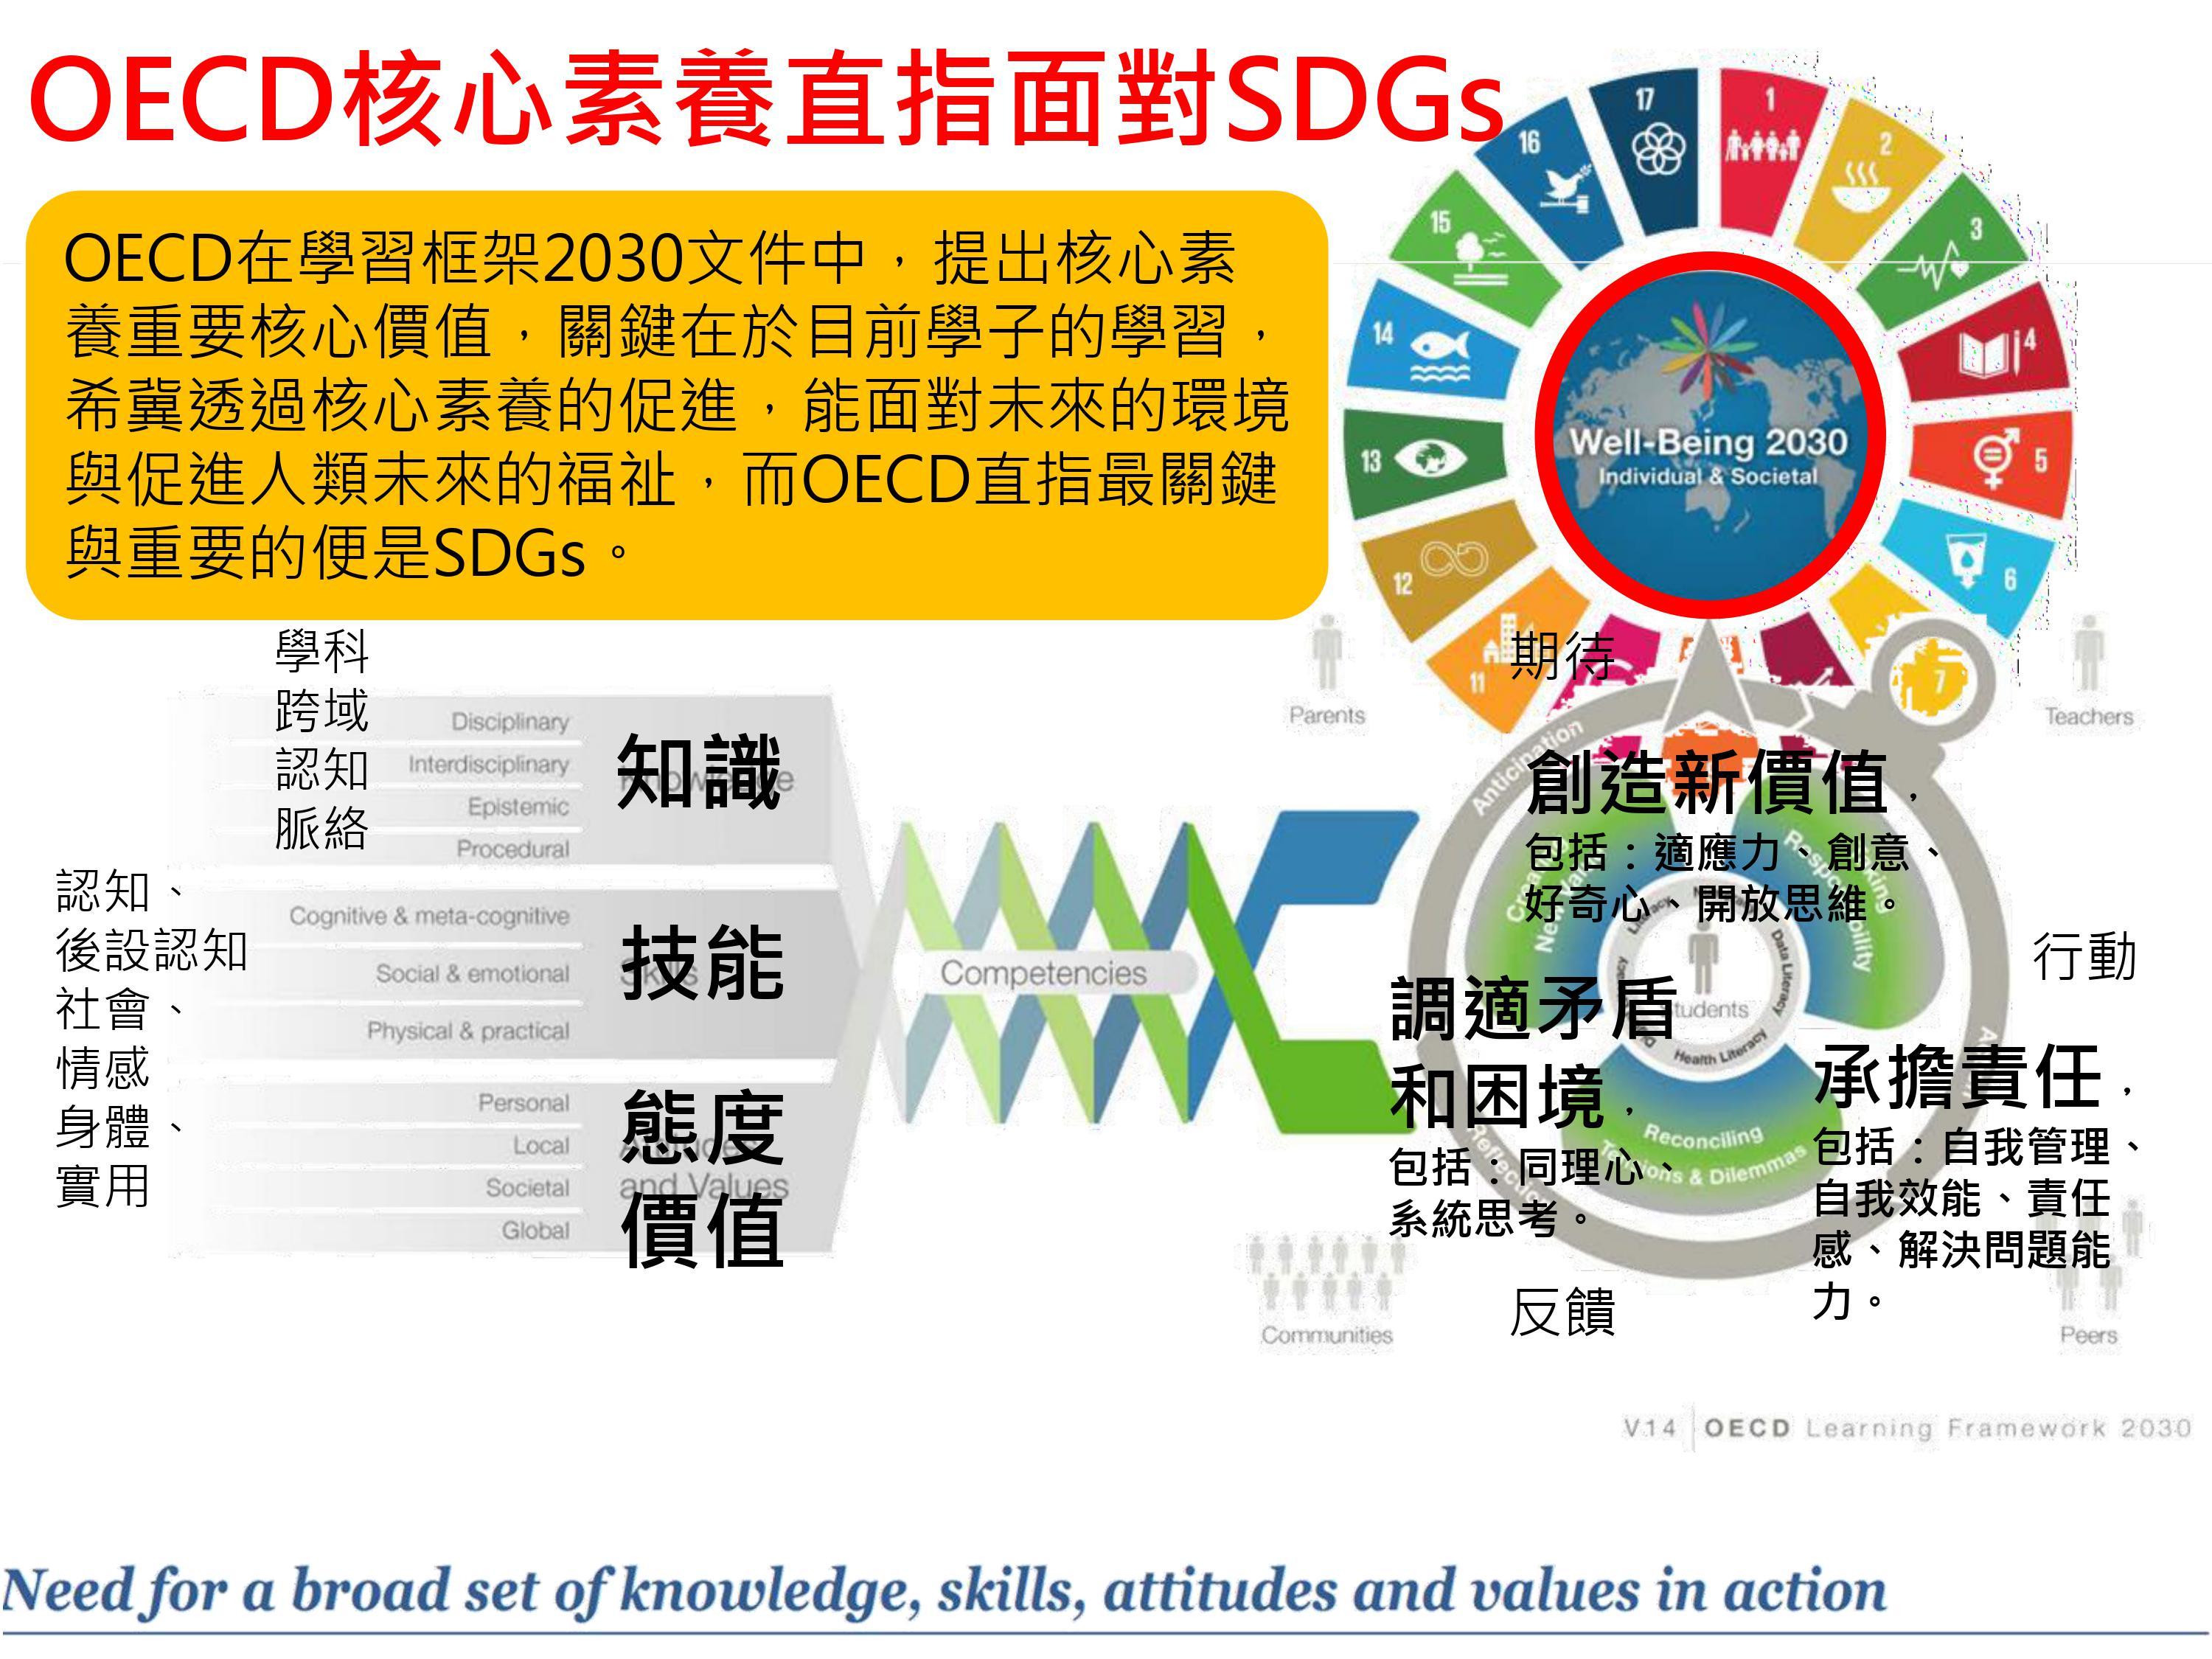 OECD核心素養直指面對SDGs